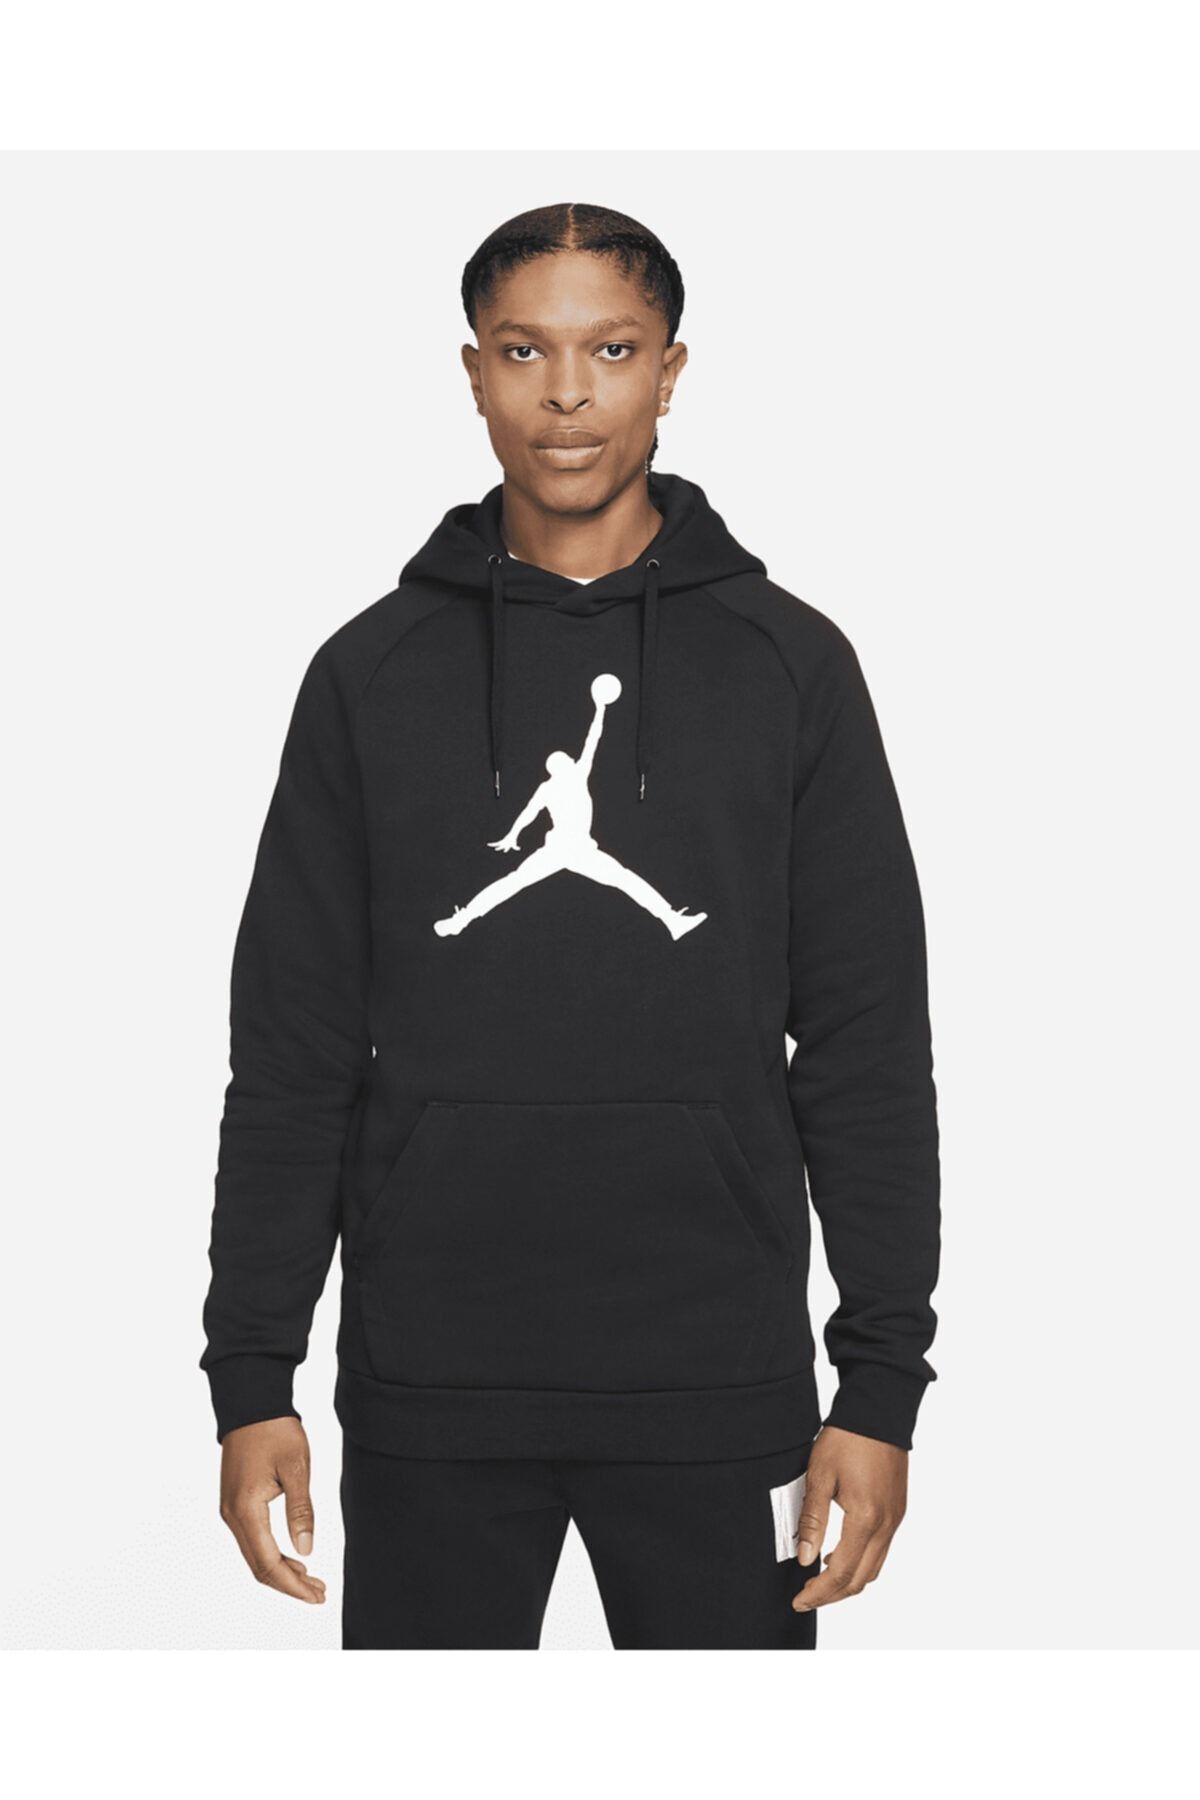 Nike Mens Air Jordan Jumpman Classic Fleece Hoodie Sweatshirt